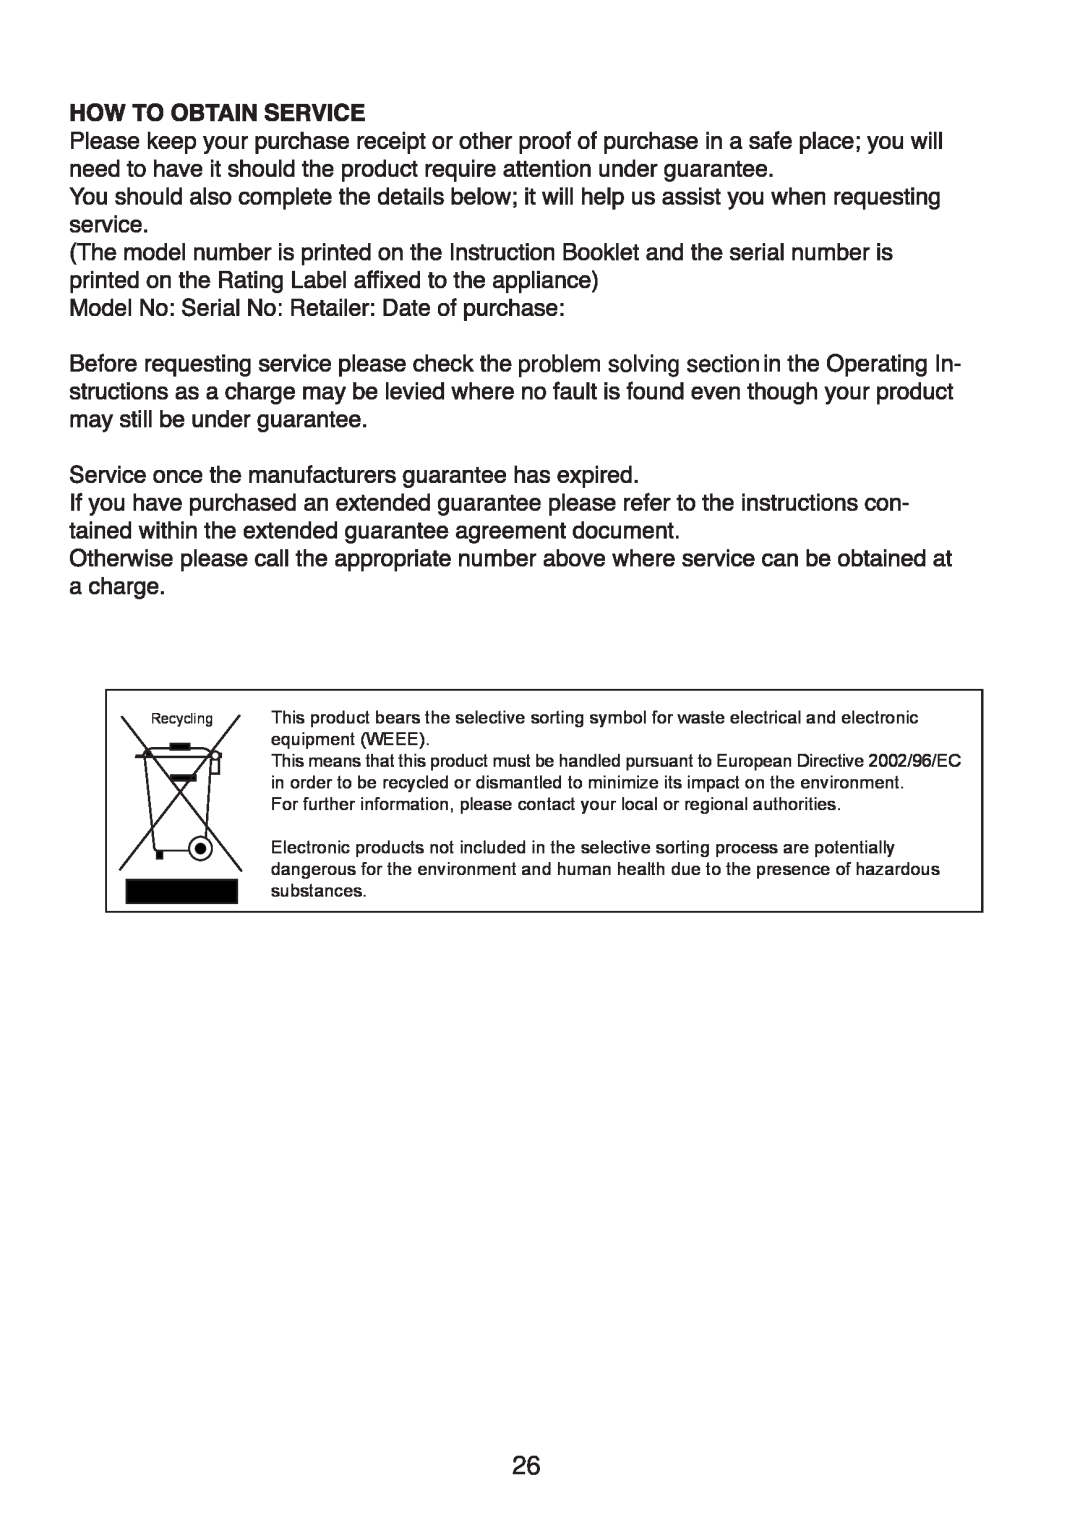 Glen Dimplex Home Appliances Ltd BE817 manual problem solving section 